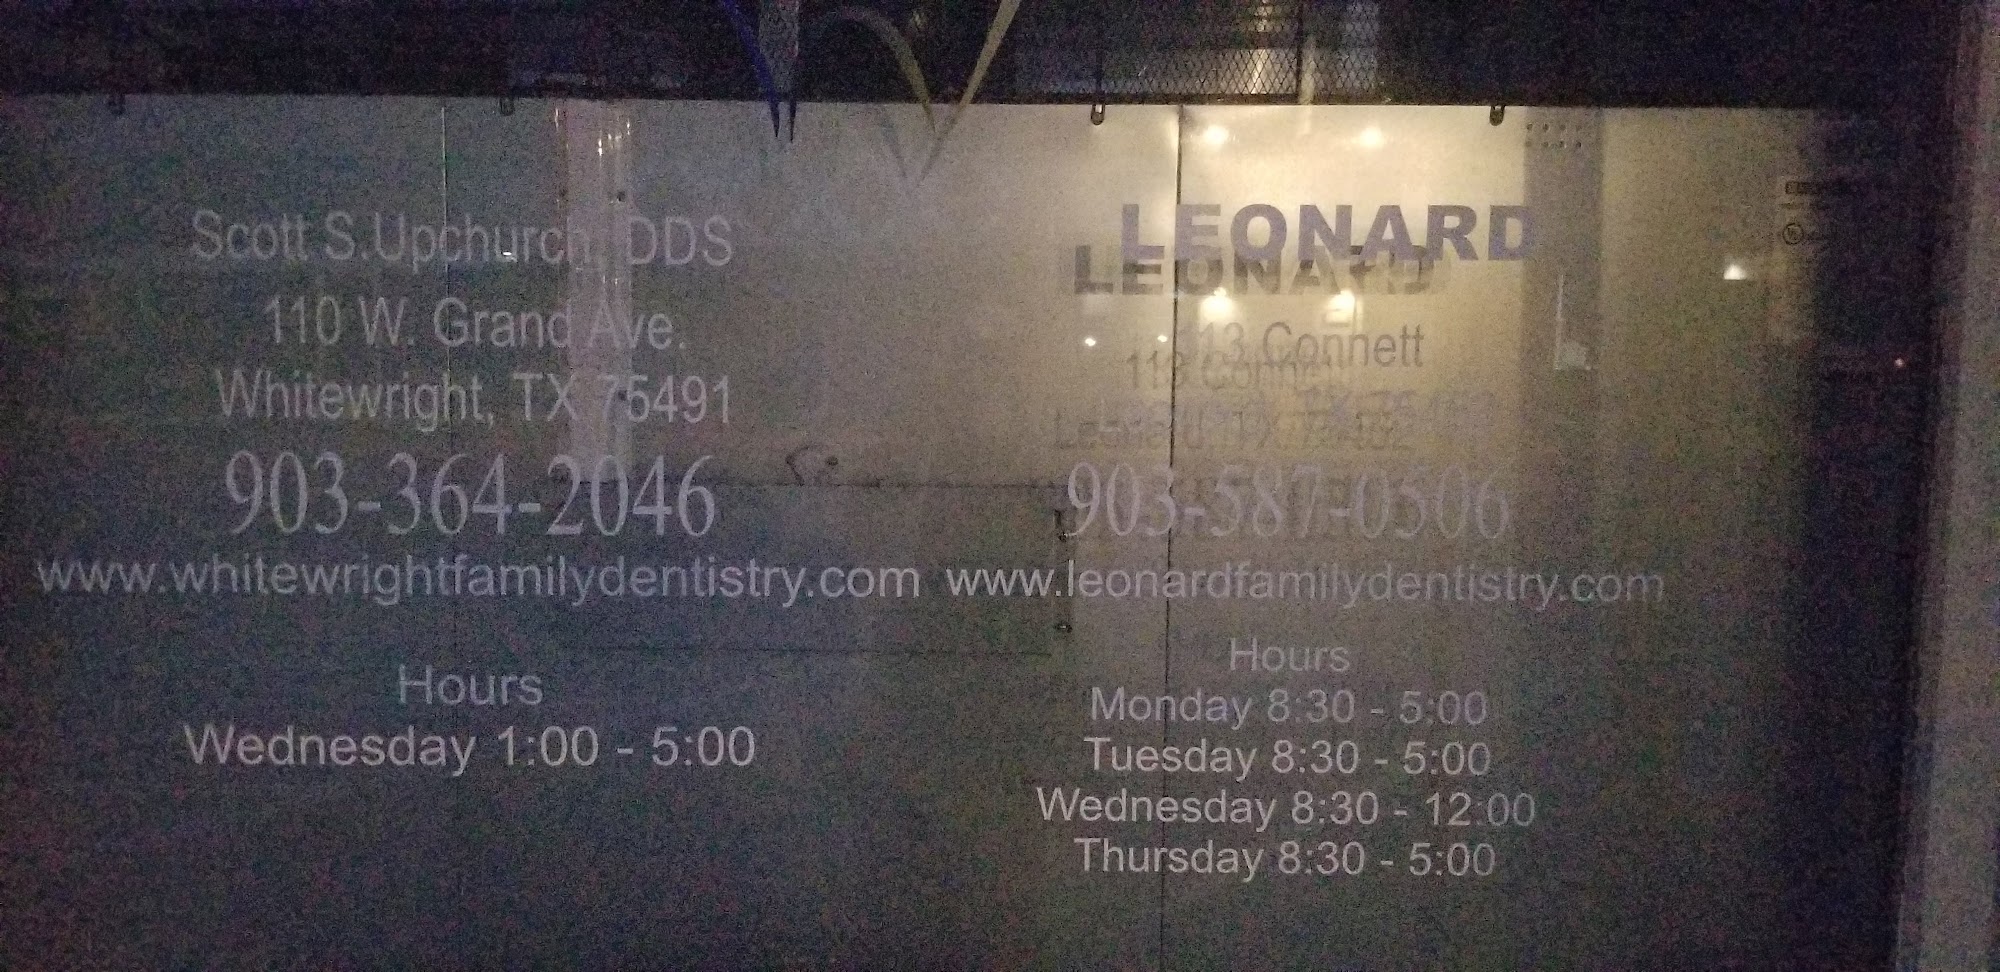 Leonard Family Dentistry 113 S Connett St, Leonard Texas 75452